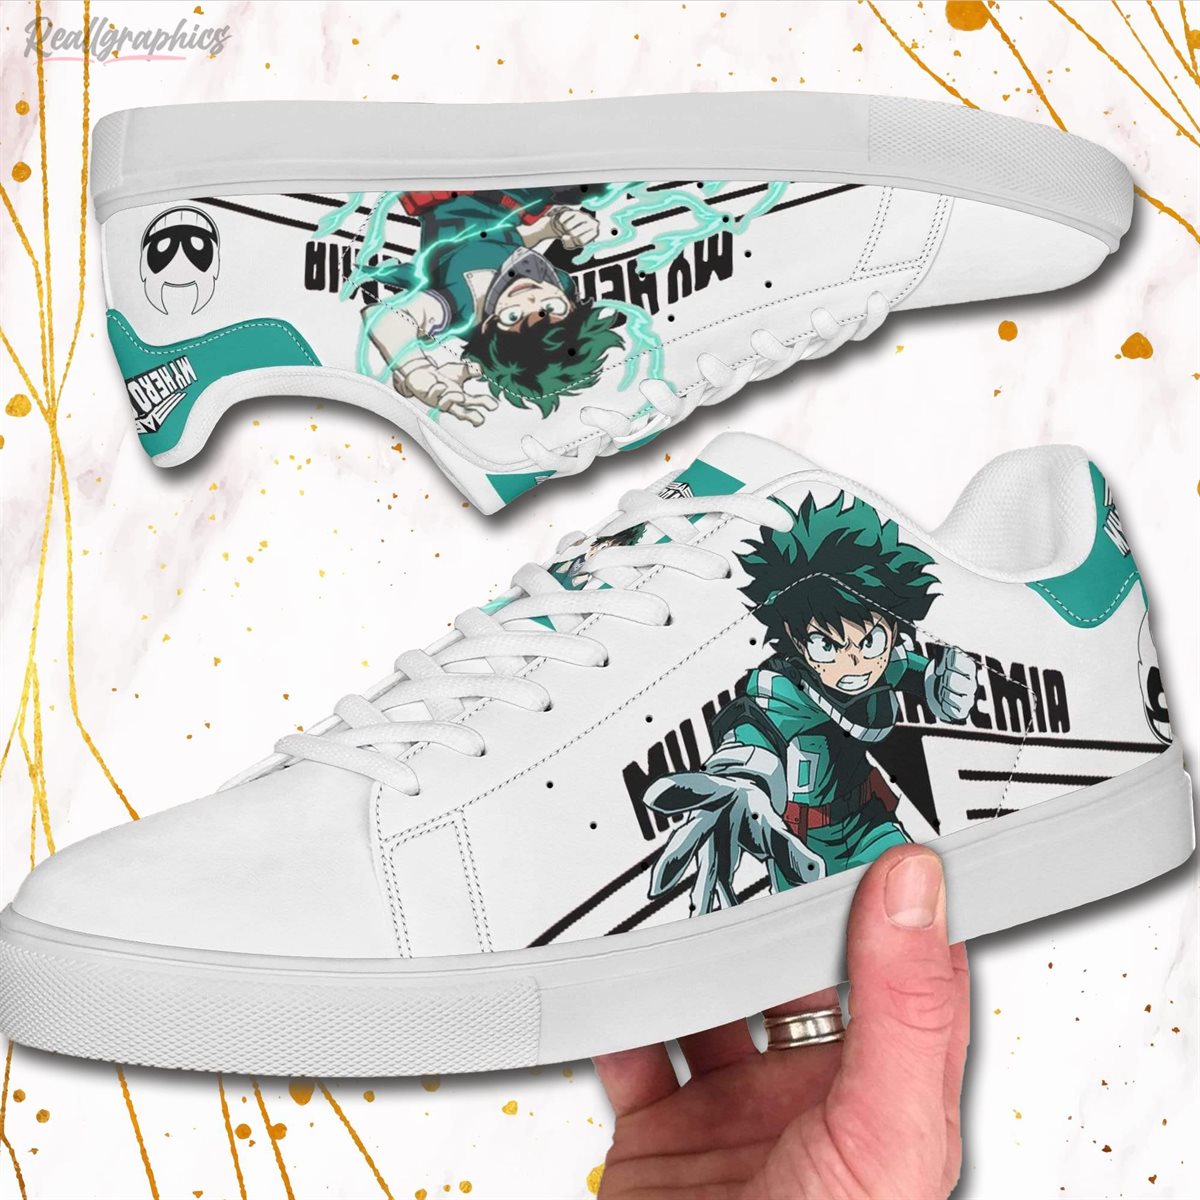 deku sneakers custom my hero academia anime shoes 2 ok3clm